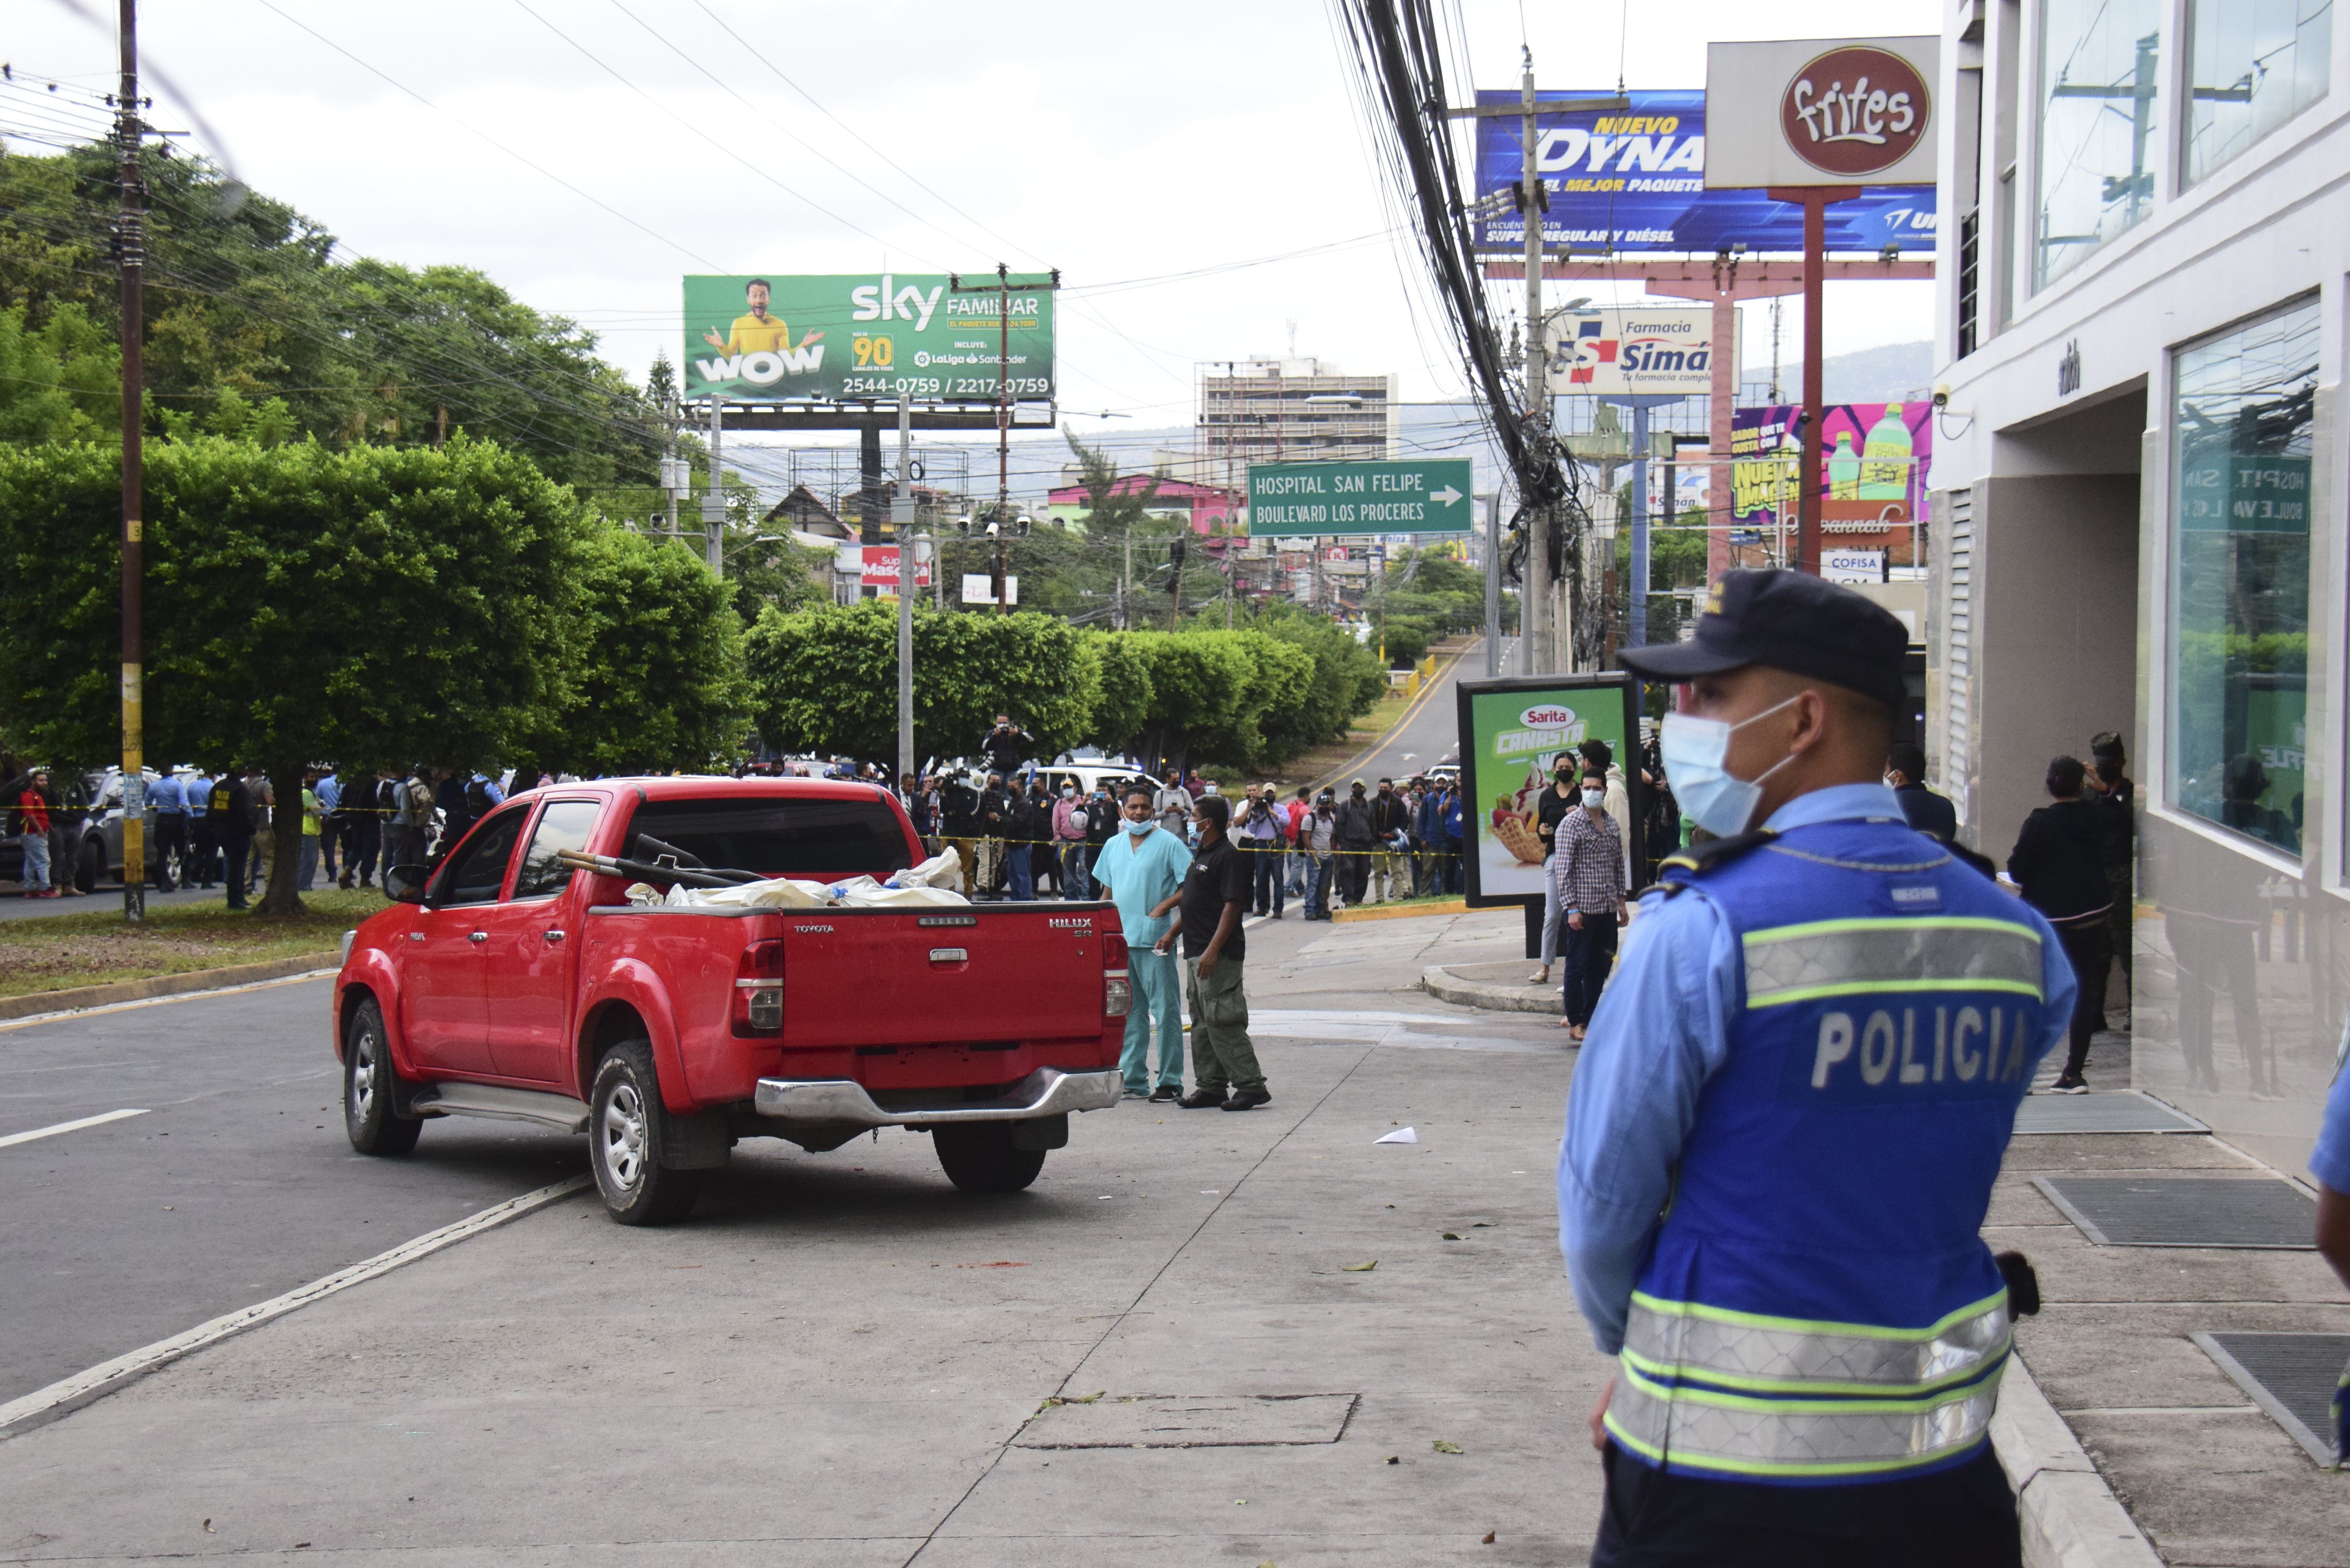 Policías y expertos forenses realizan el levantamiento de cuatro personas asesinadas en la madrugada de hoy, a la salida del estacionamiento de un edificio donde funcionan locales comerciales y residenciales, en Tegucigalpa (Honduras). EFE/STR 